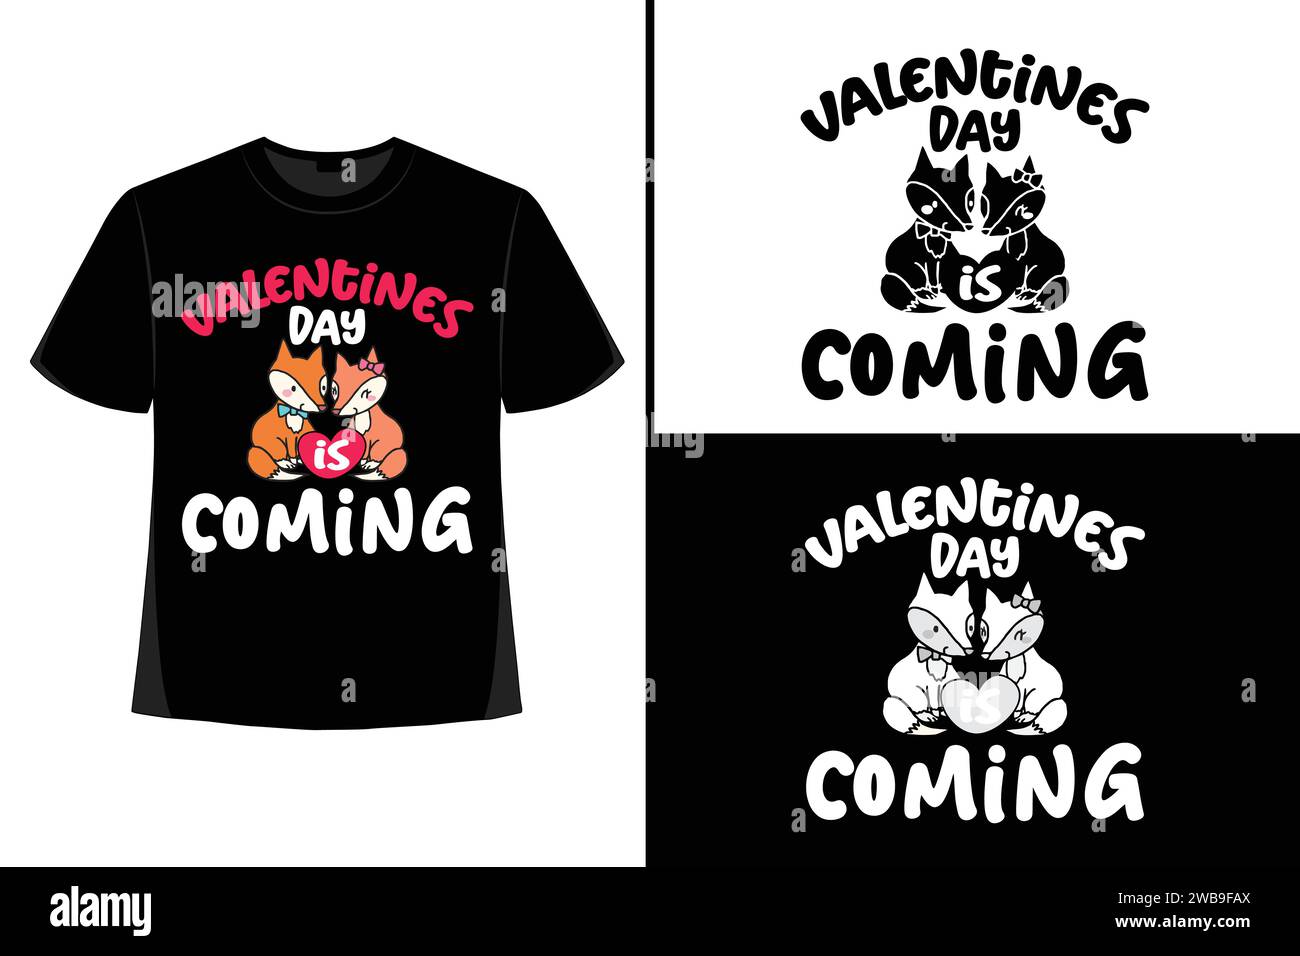 San Valentino, San Valentino SVG, T-shirt design San Valentino, modello grafico T-shirt, T-shirt tipografica, Happy Valentine's, romantico. Illustrazione Vettoriale